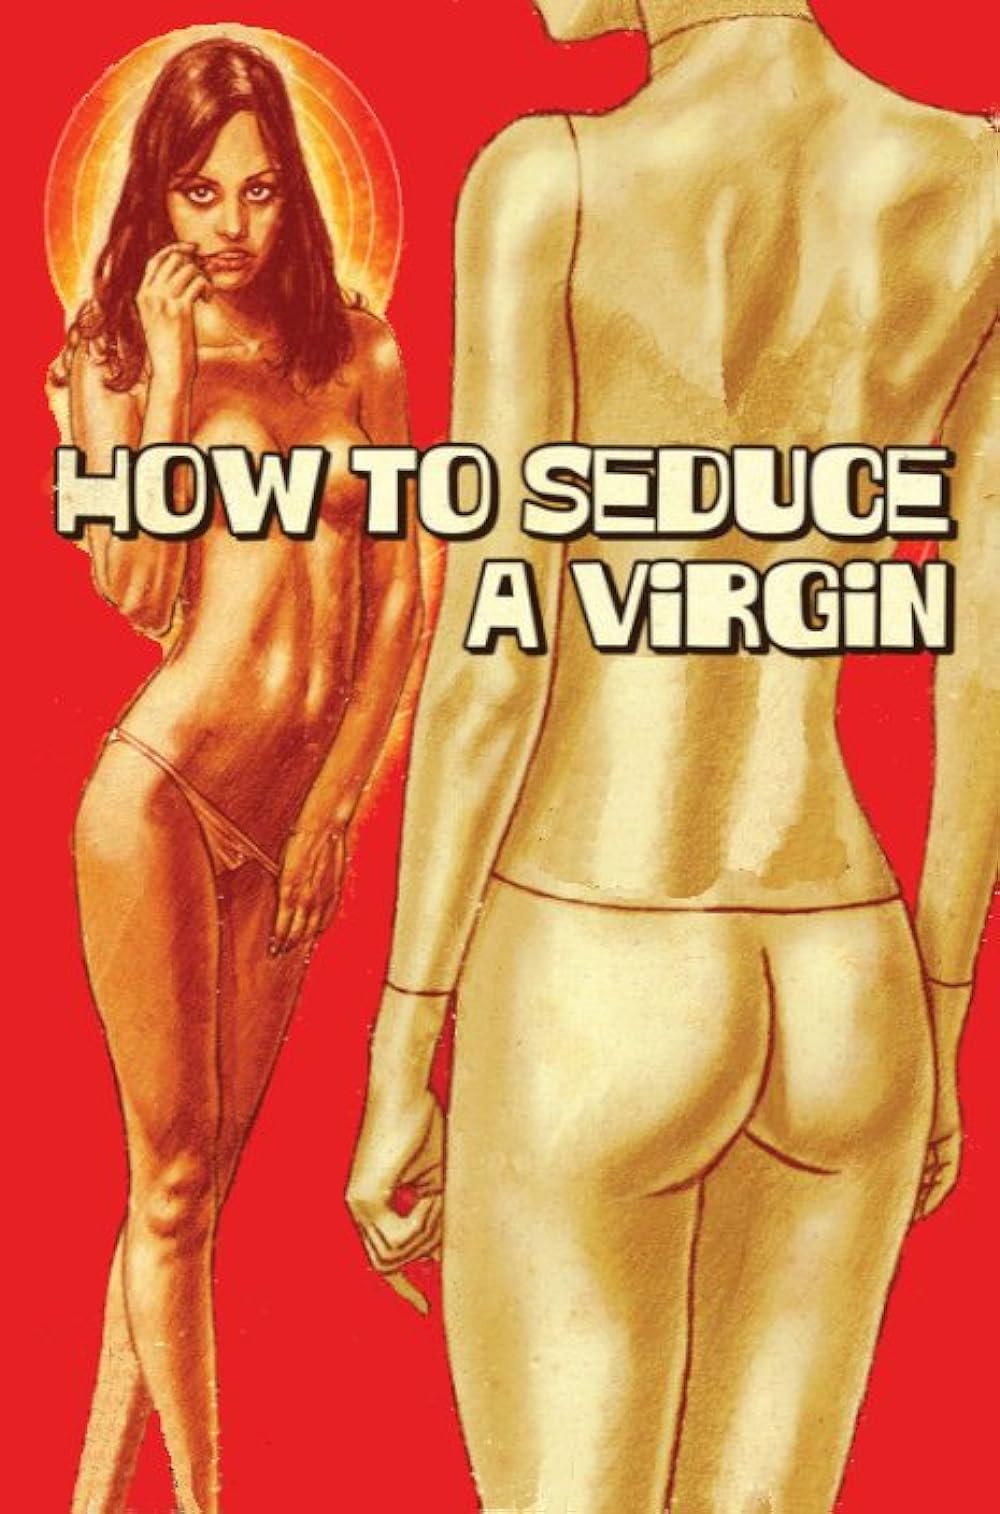 derek hillegass recommends how to seduce a virgin pic